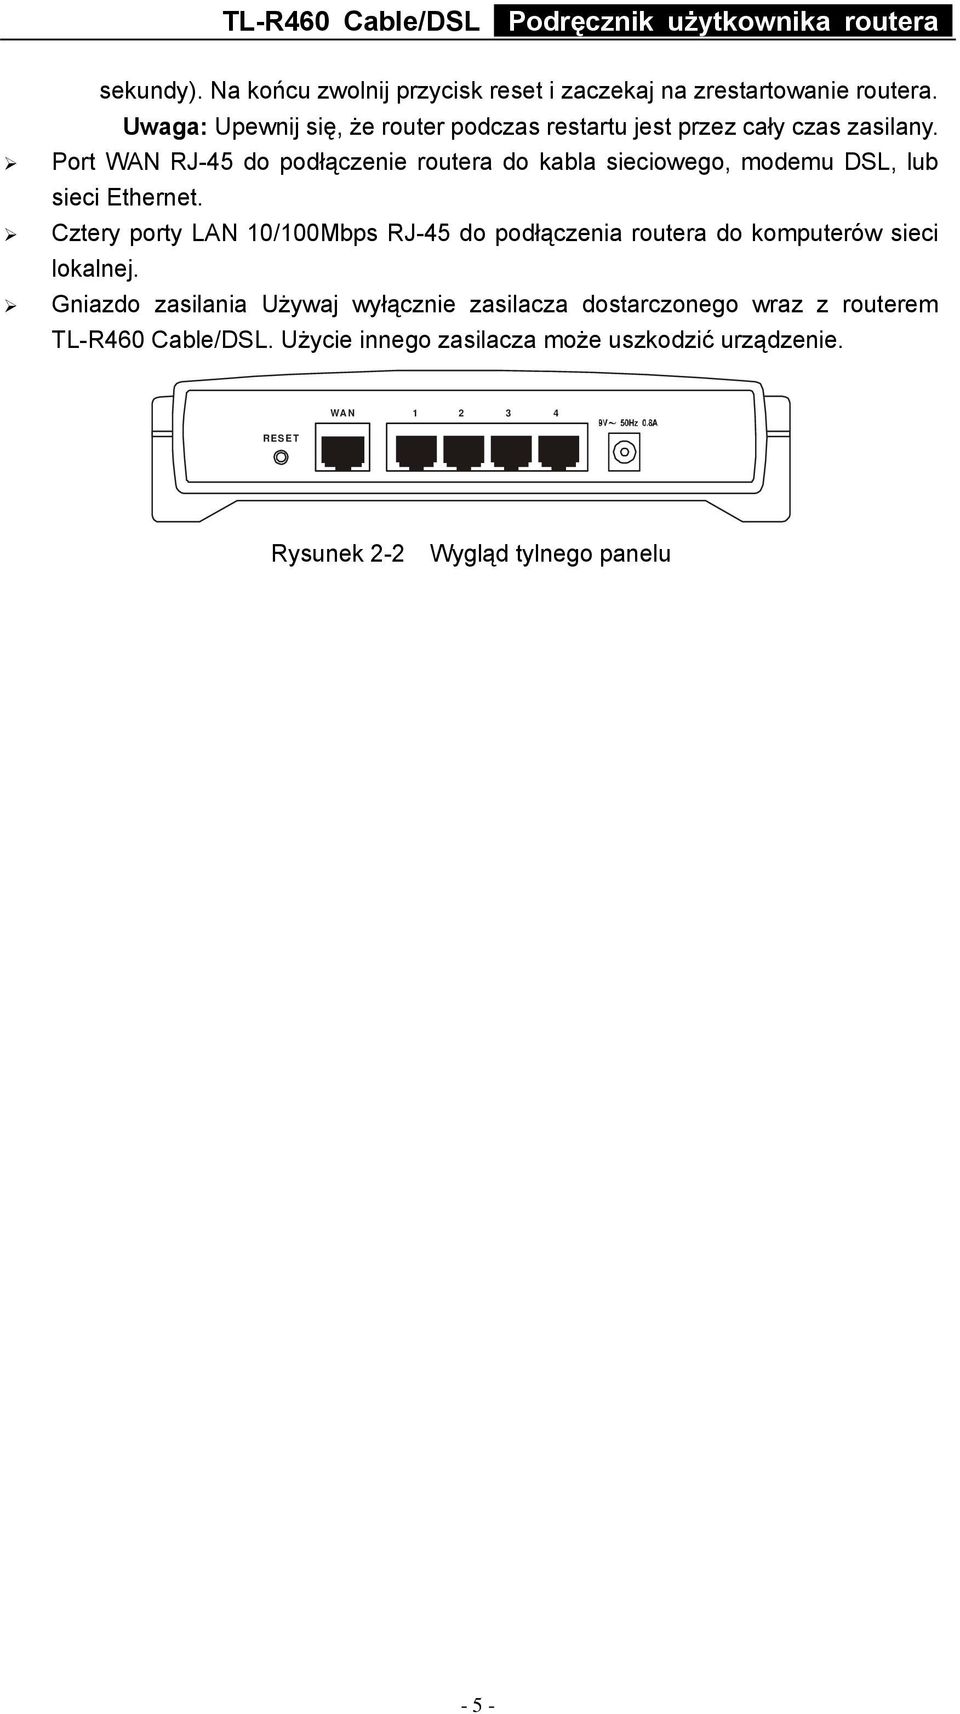 Port WAN RJ-45 do podłączenie routera do kabla sieciowego, modemu DSL, lub sieci Ethernet.